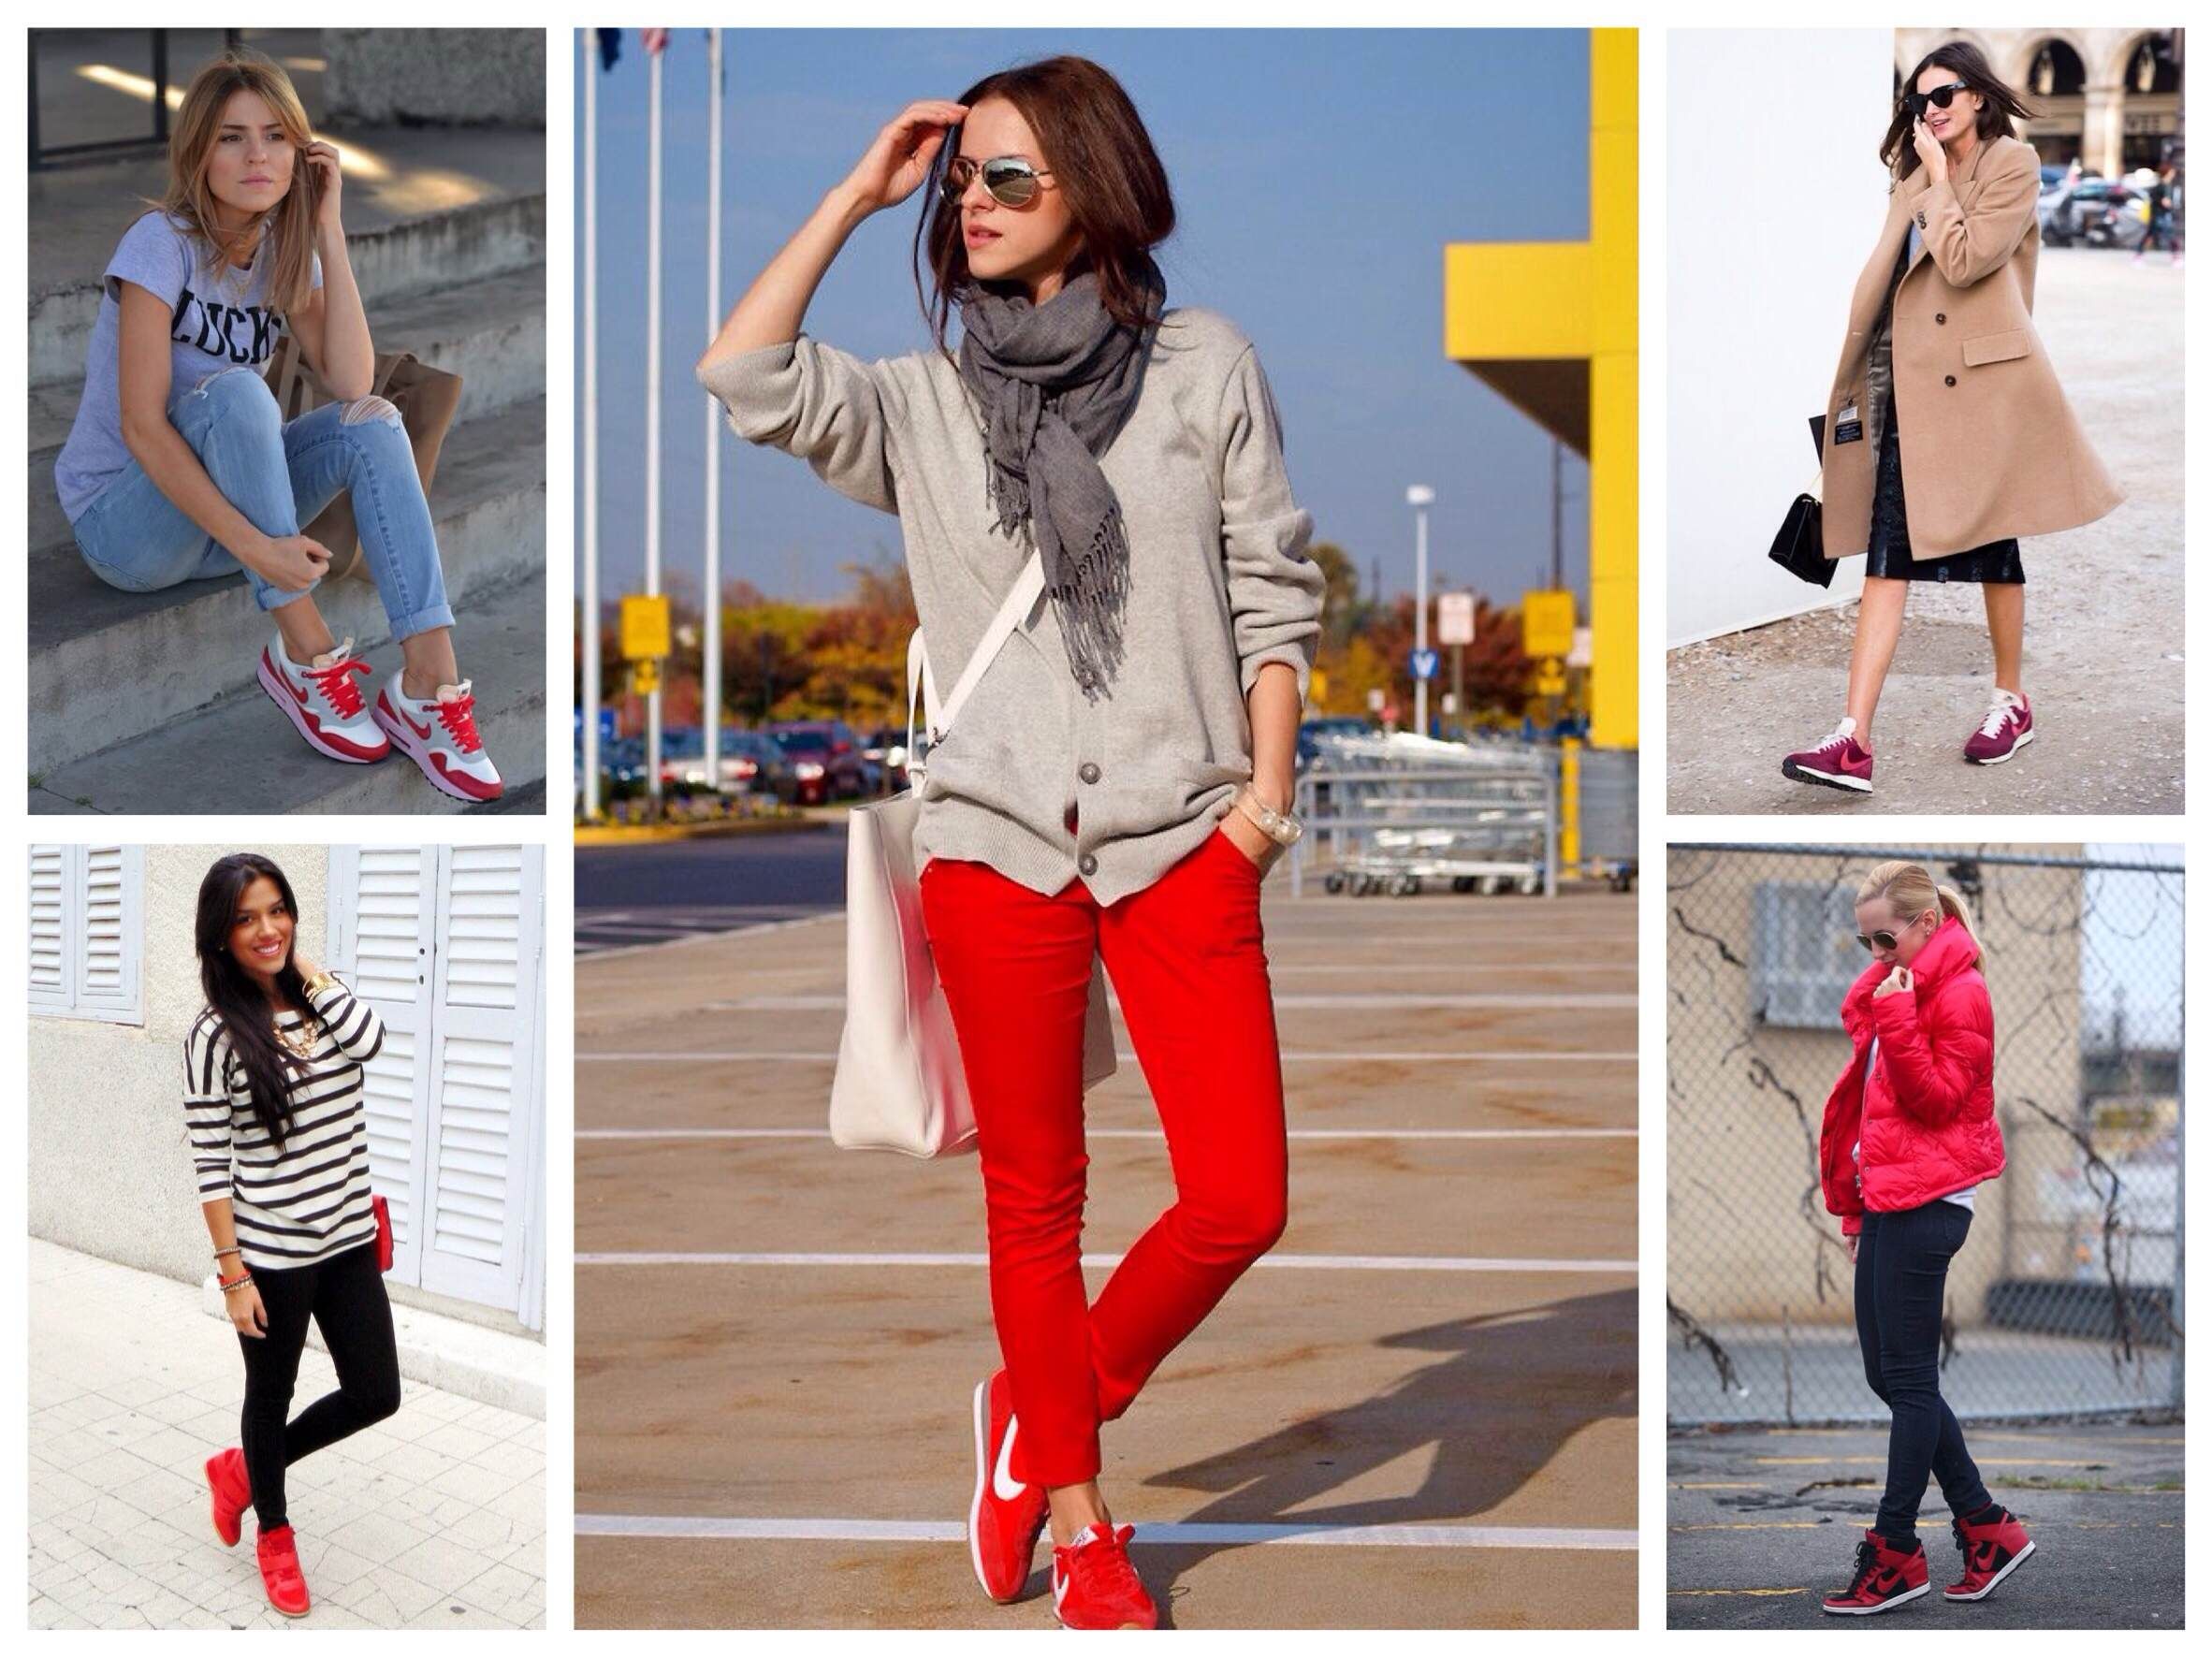 С чем носить красные женские кроссовки? Примеры одежды к женским красным кроссовкам с разного цвета подошвами. Топ 5 образов.